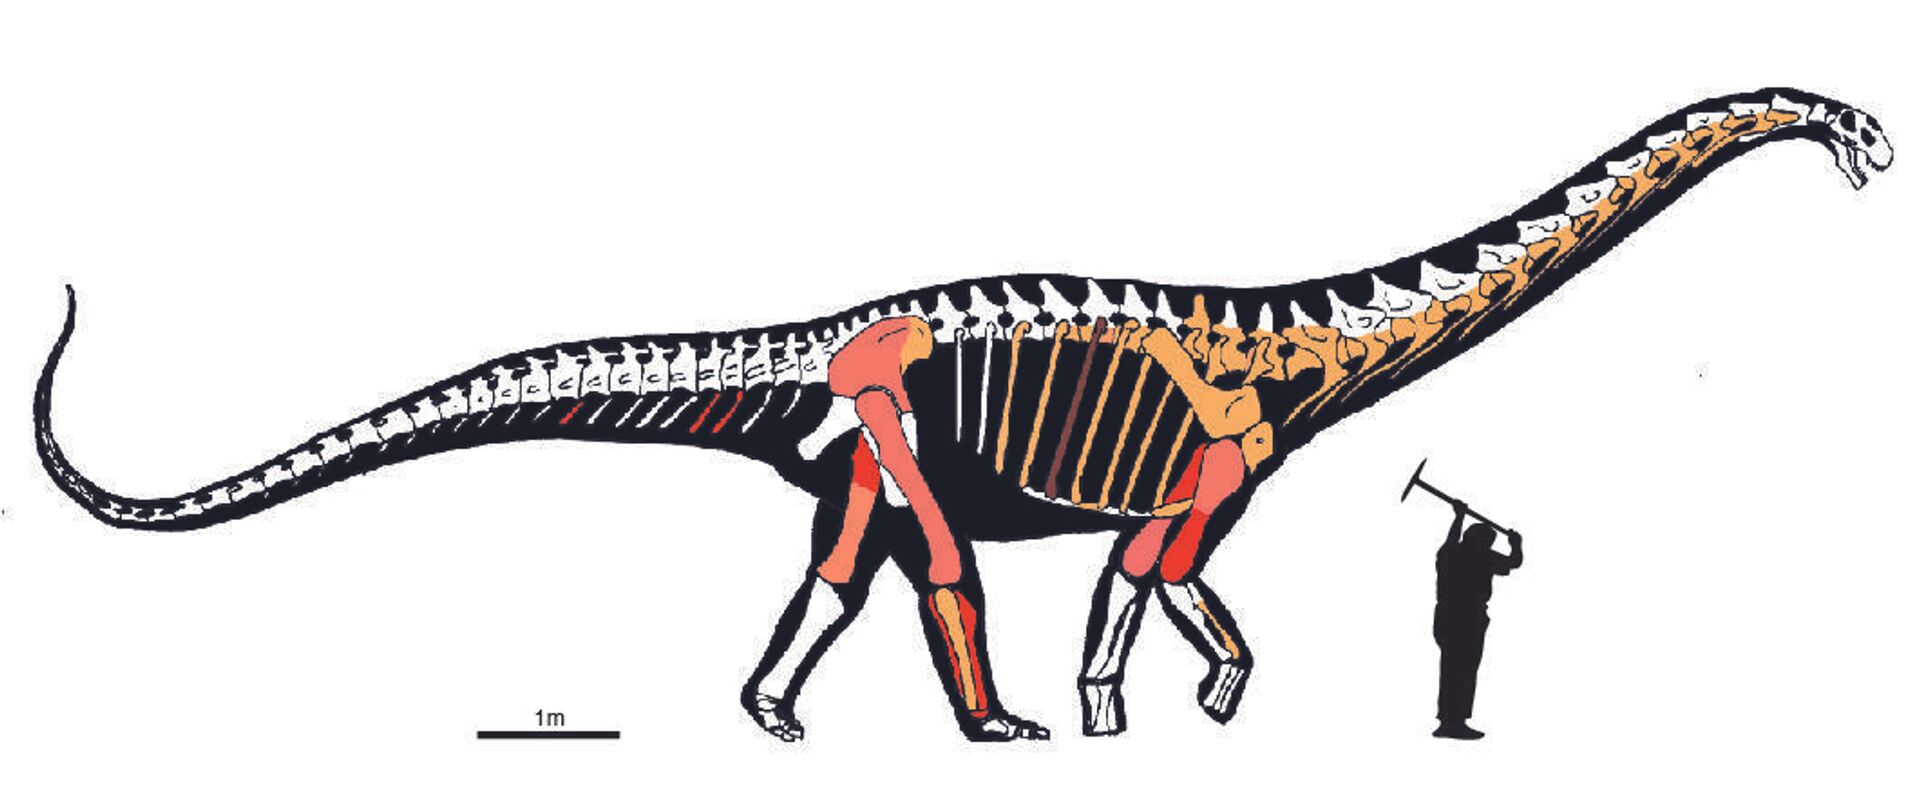 Huesos hallados del 'Abditosaurus kuehnei' en el yacimiento de Orcau-1 (Lleida) - Sputnik Mundo, 1920, 08.02.2022